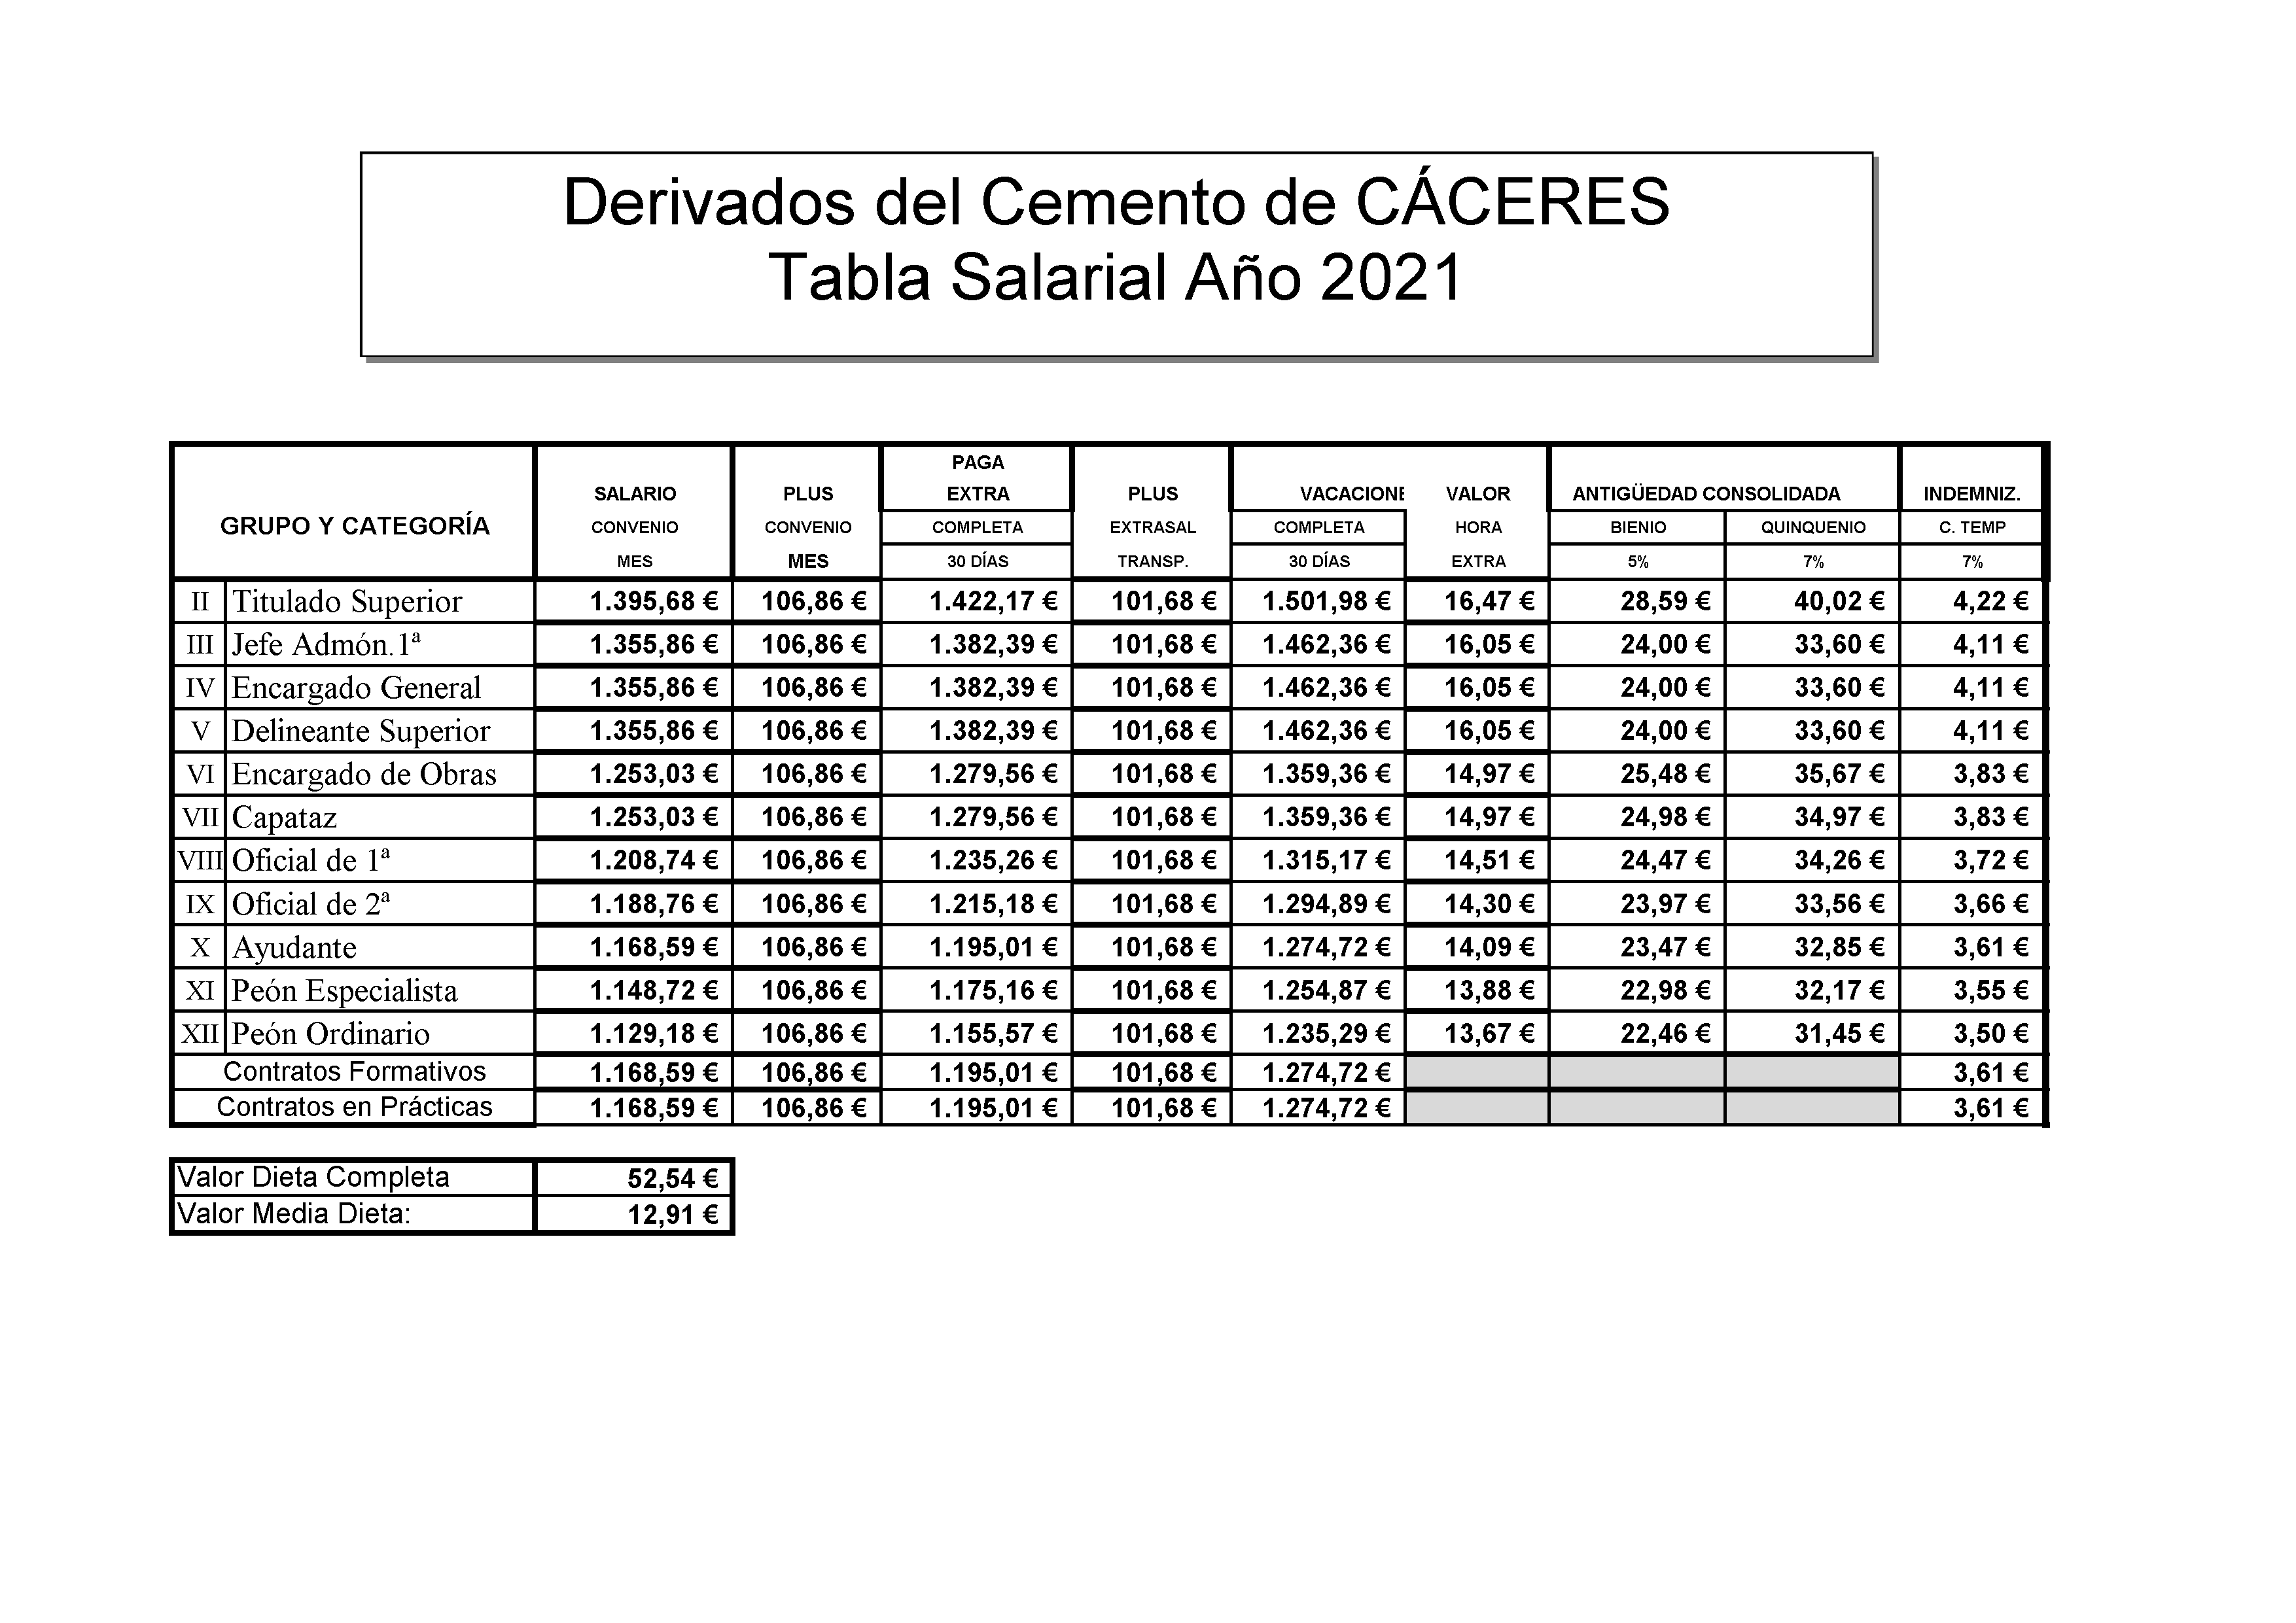 DERIVADOS DEL CEMENTO DE CACERES - TABLA SALARIAL AÑO 2021